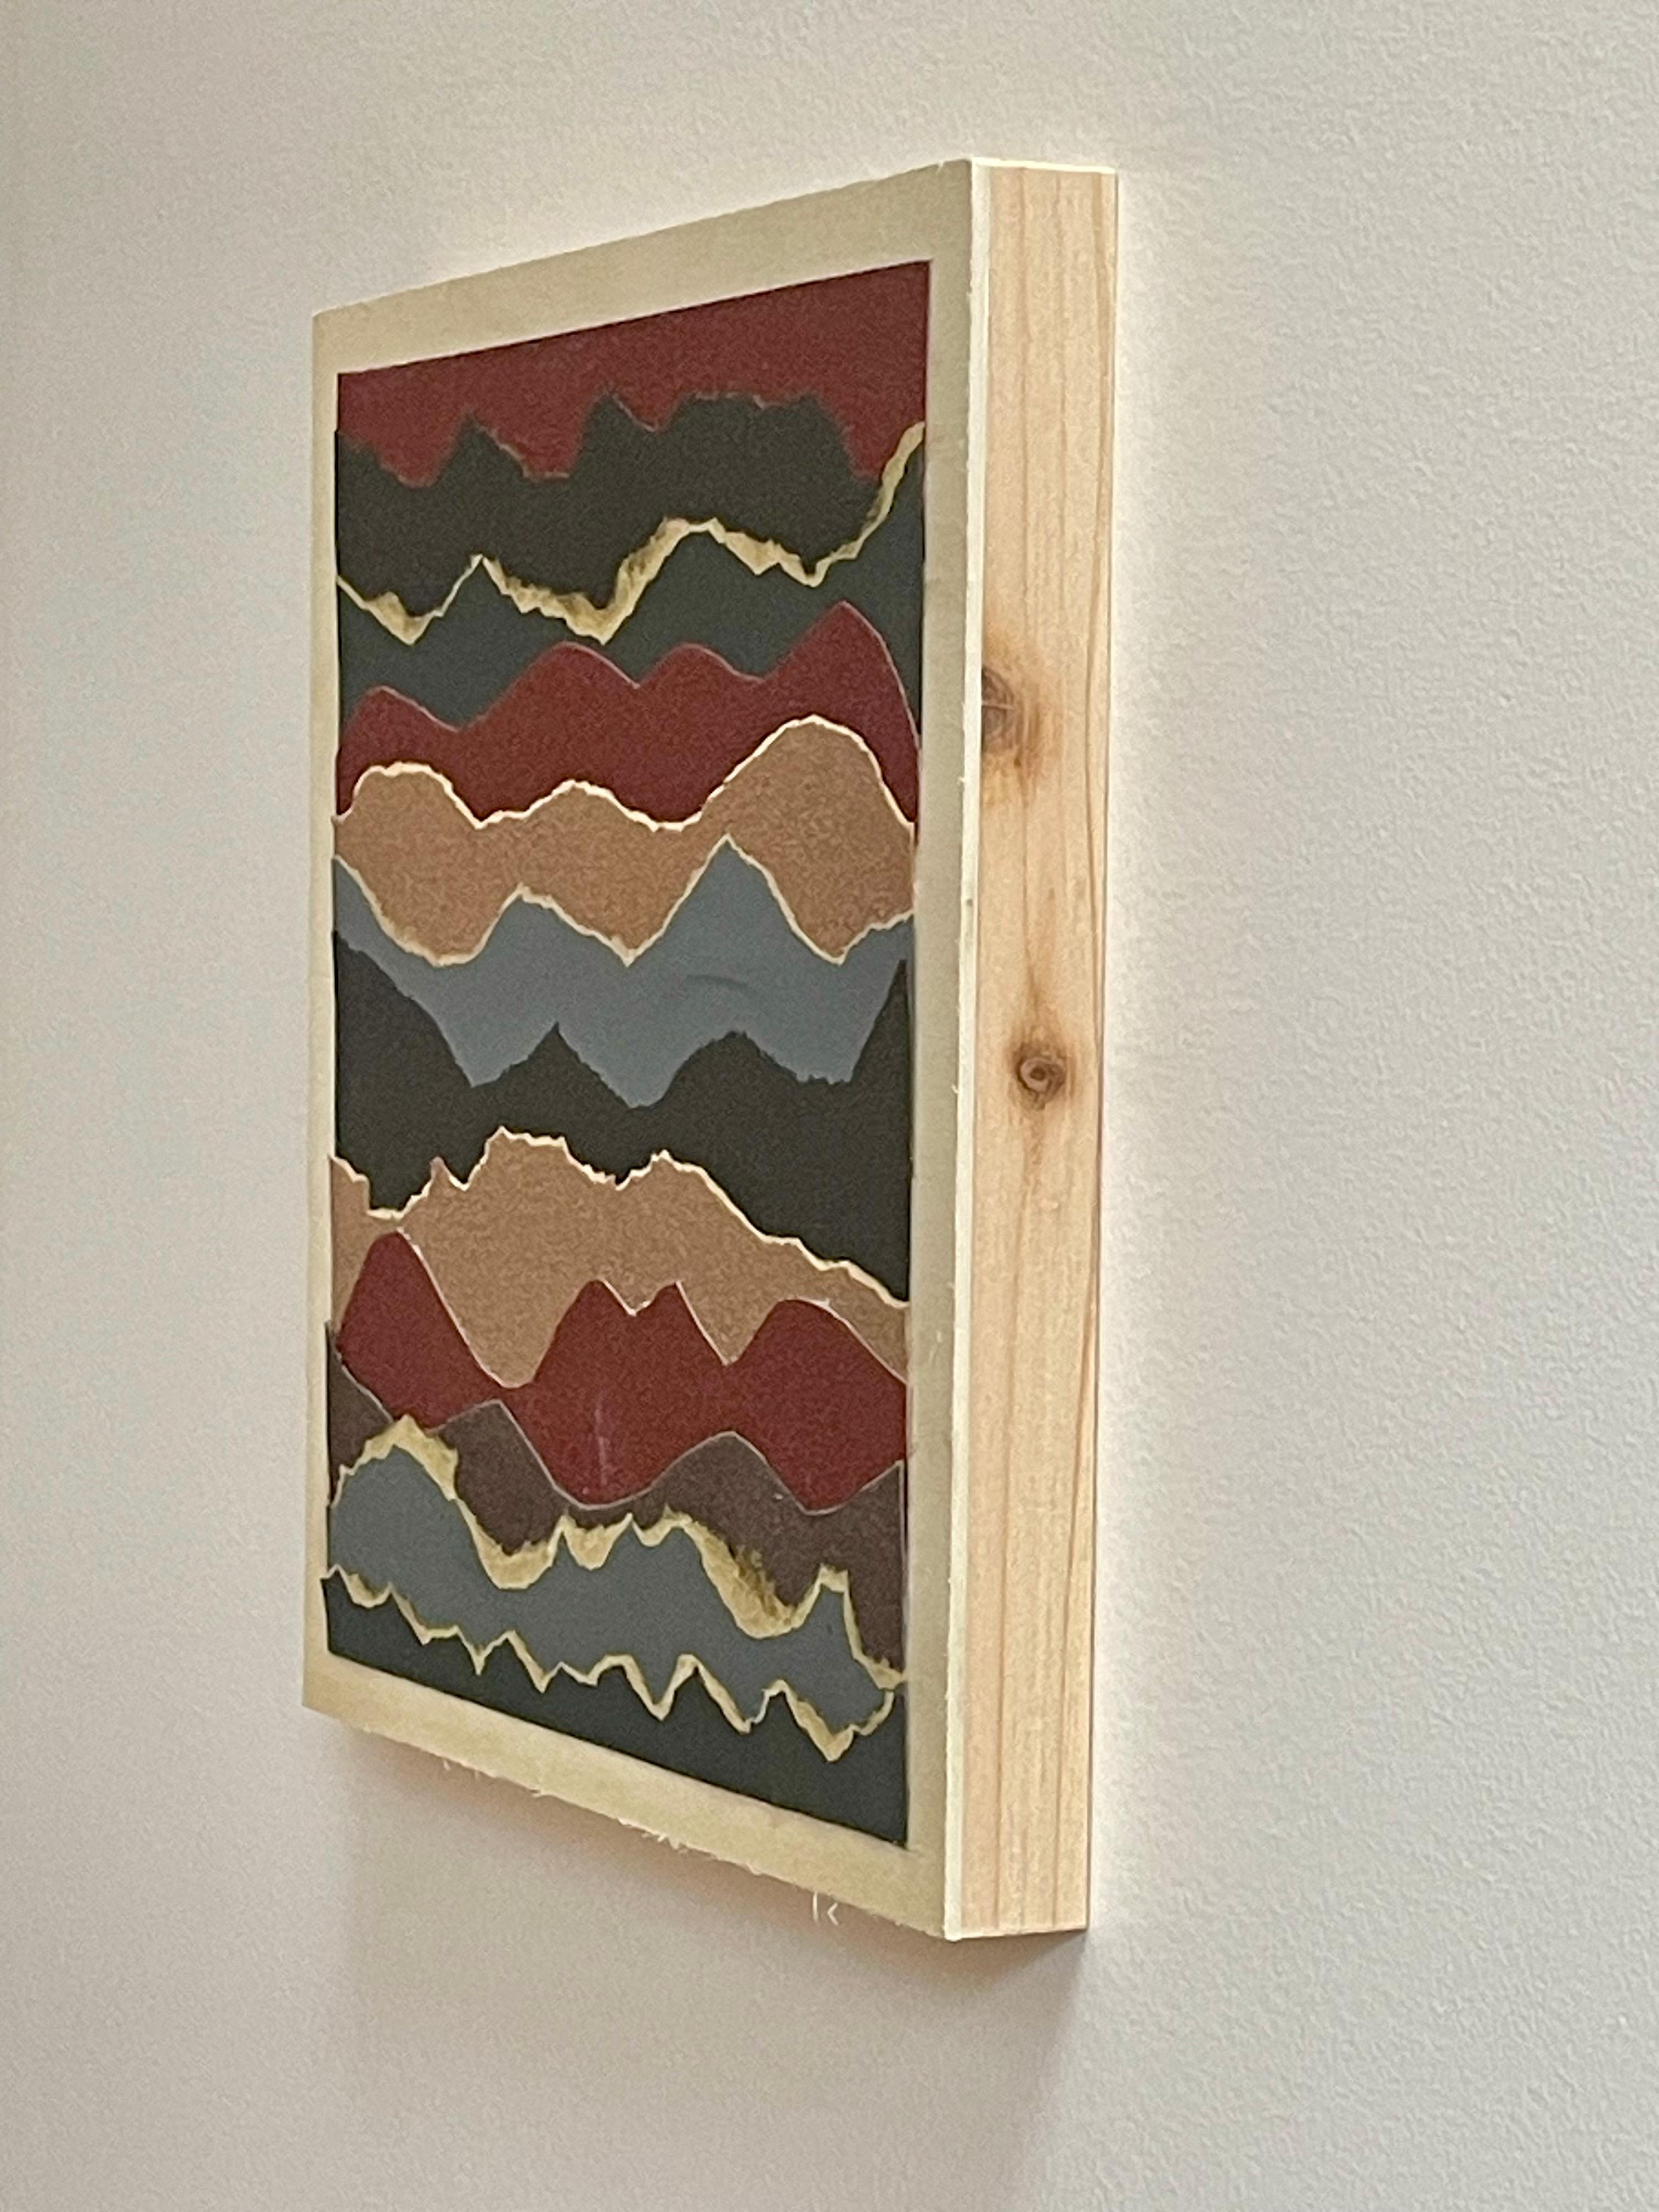 Fluctus 5 - Collage papier sur panneau de bois, paysage marin abstrait, rouge, gris et marron - Contemporain Mixed Media Art par Marie Laforey